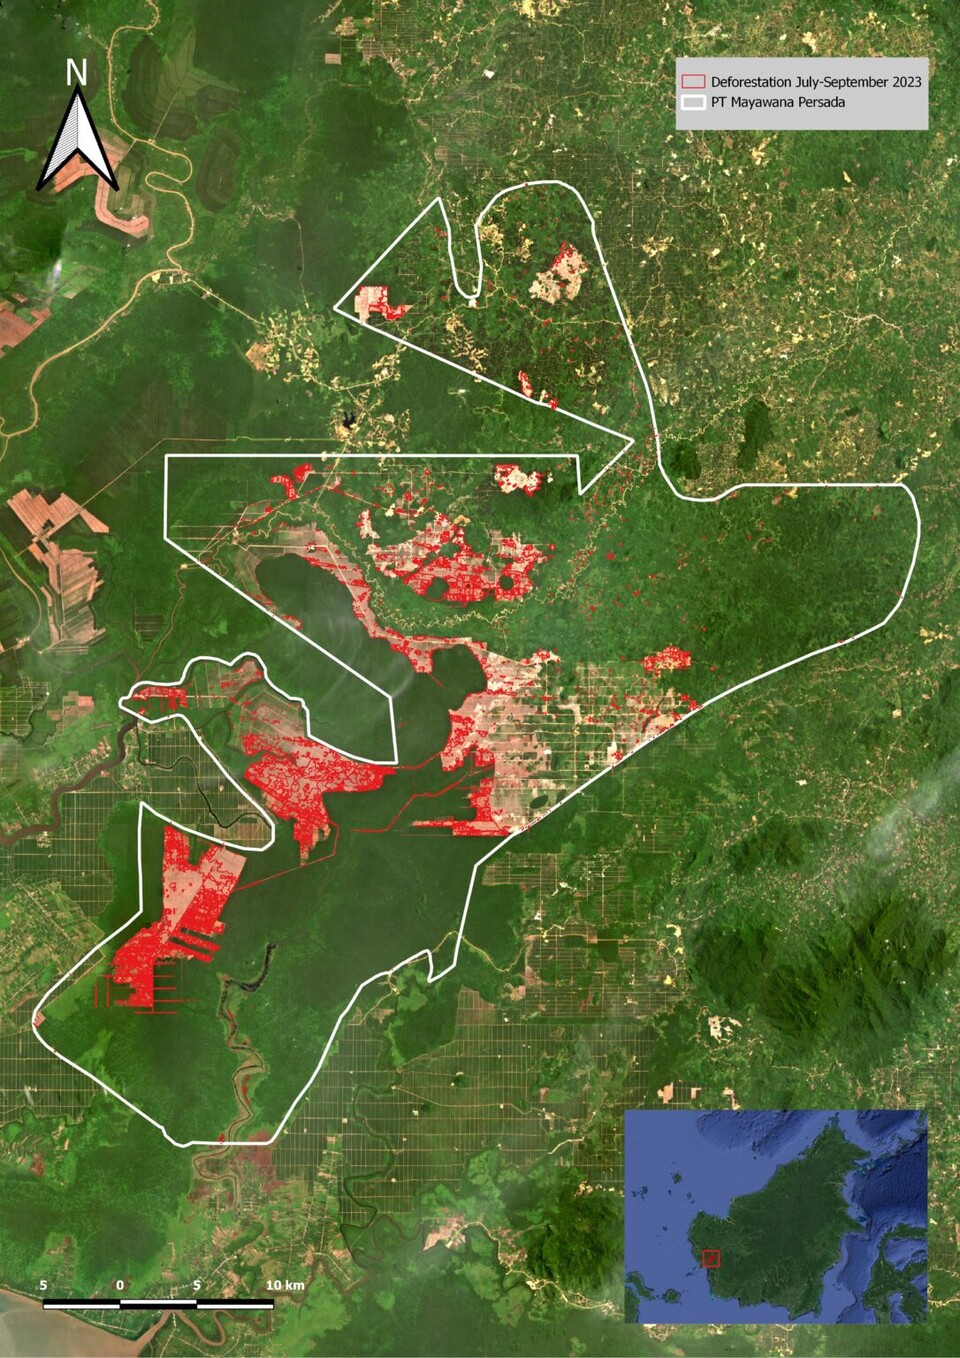 인도네시아 목재회사가 개간한 숲 면적. 붉은 영역은 올해 7~8월 벌채한 숲, 하얀 영역은 목재회사가 소유한 전체 숲 면적. (사진 Aidenvironment)/뉴스펭귄